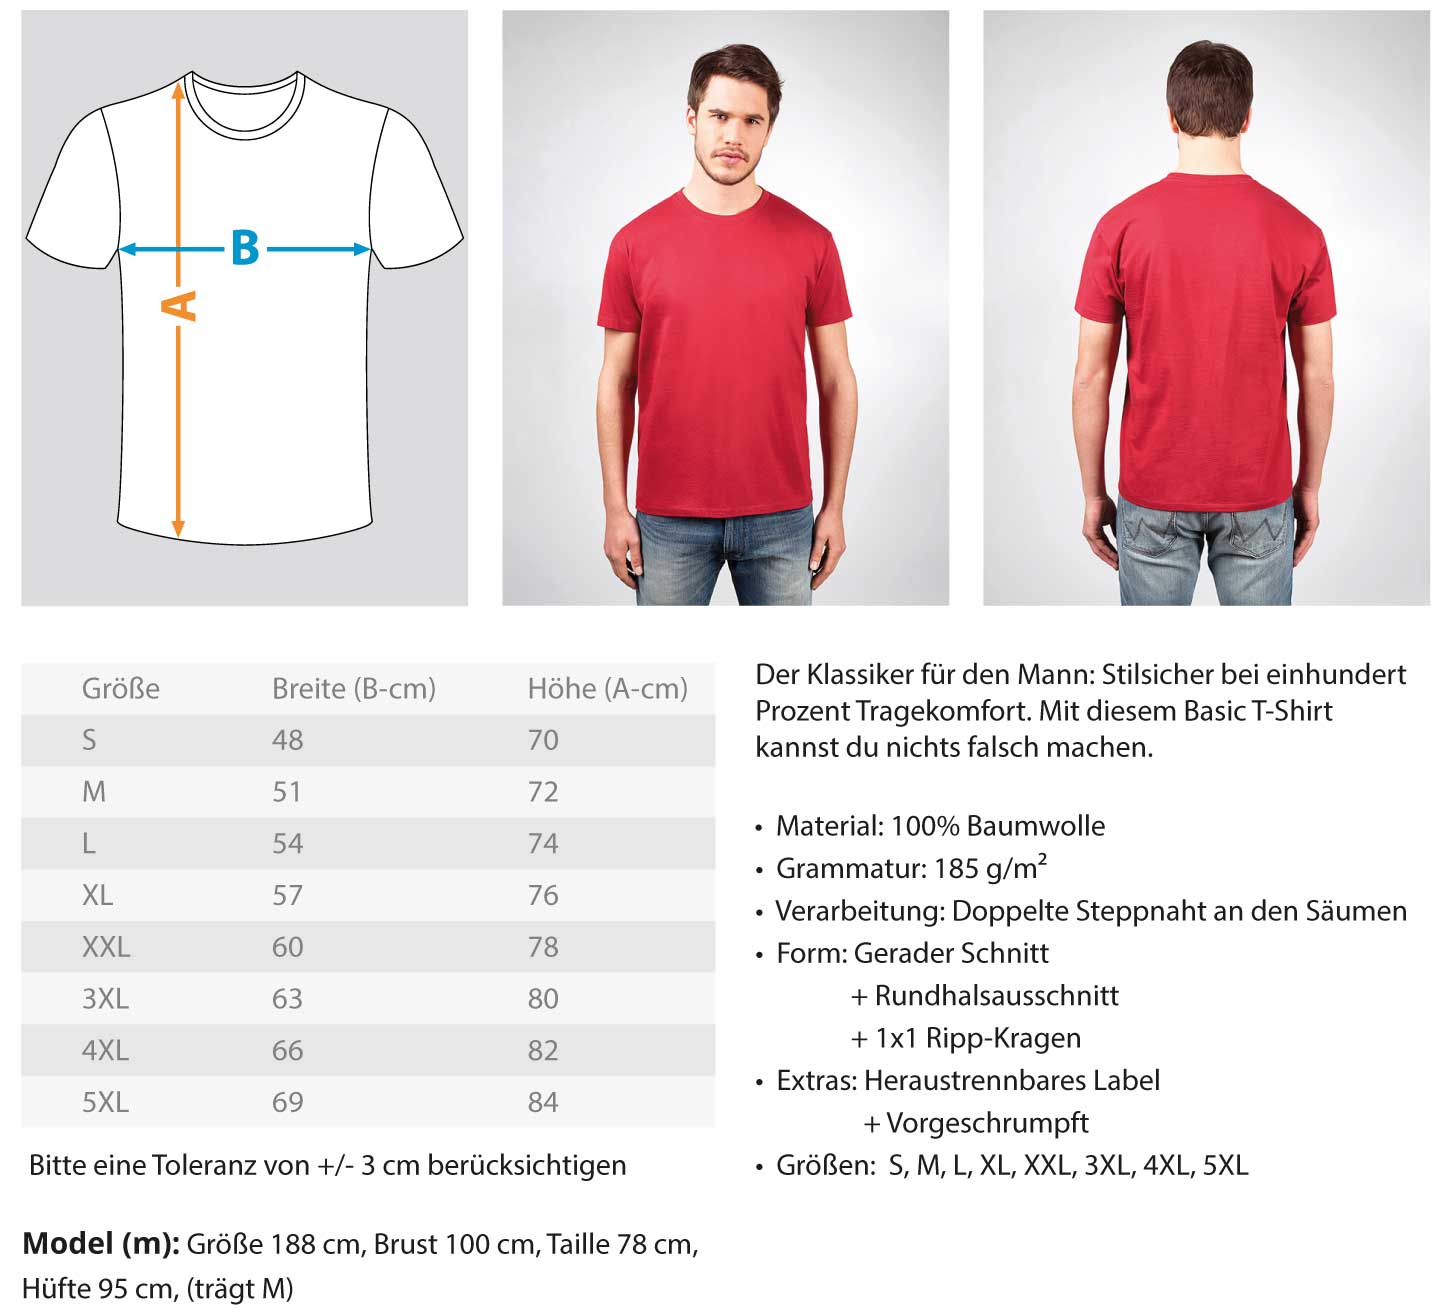 Gerüstbauer T-Shirt / Gerüstbau ist in meiner DNA €24.95 Gerüstbauer - Shop >>